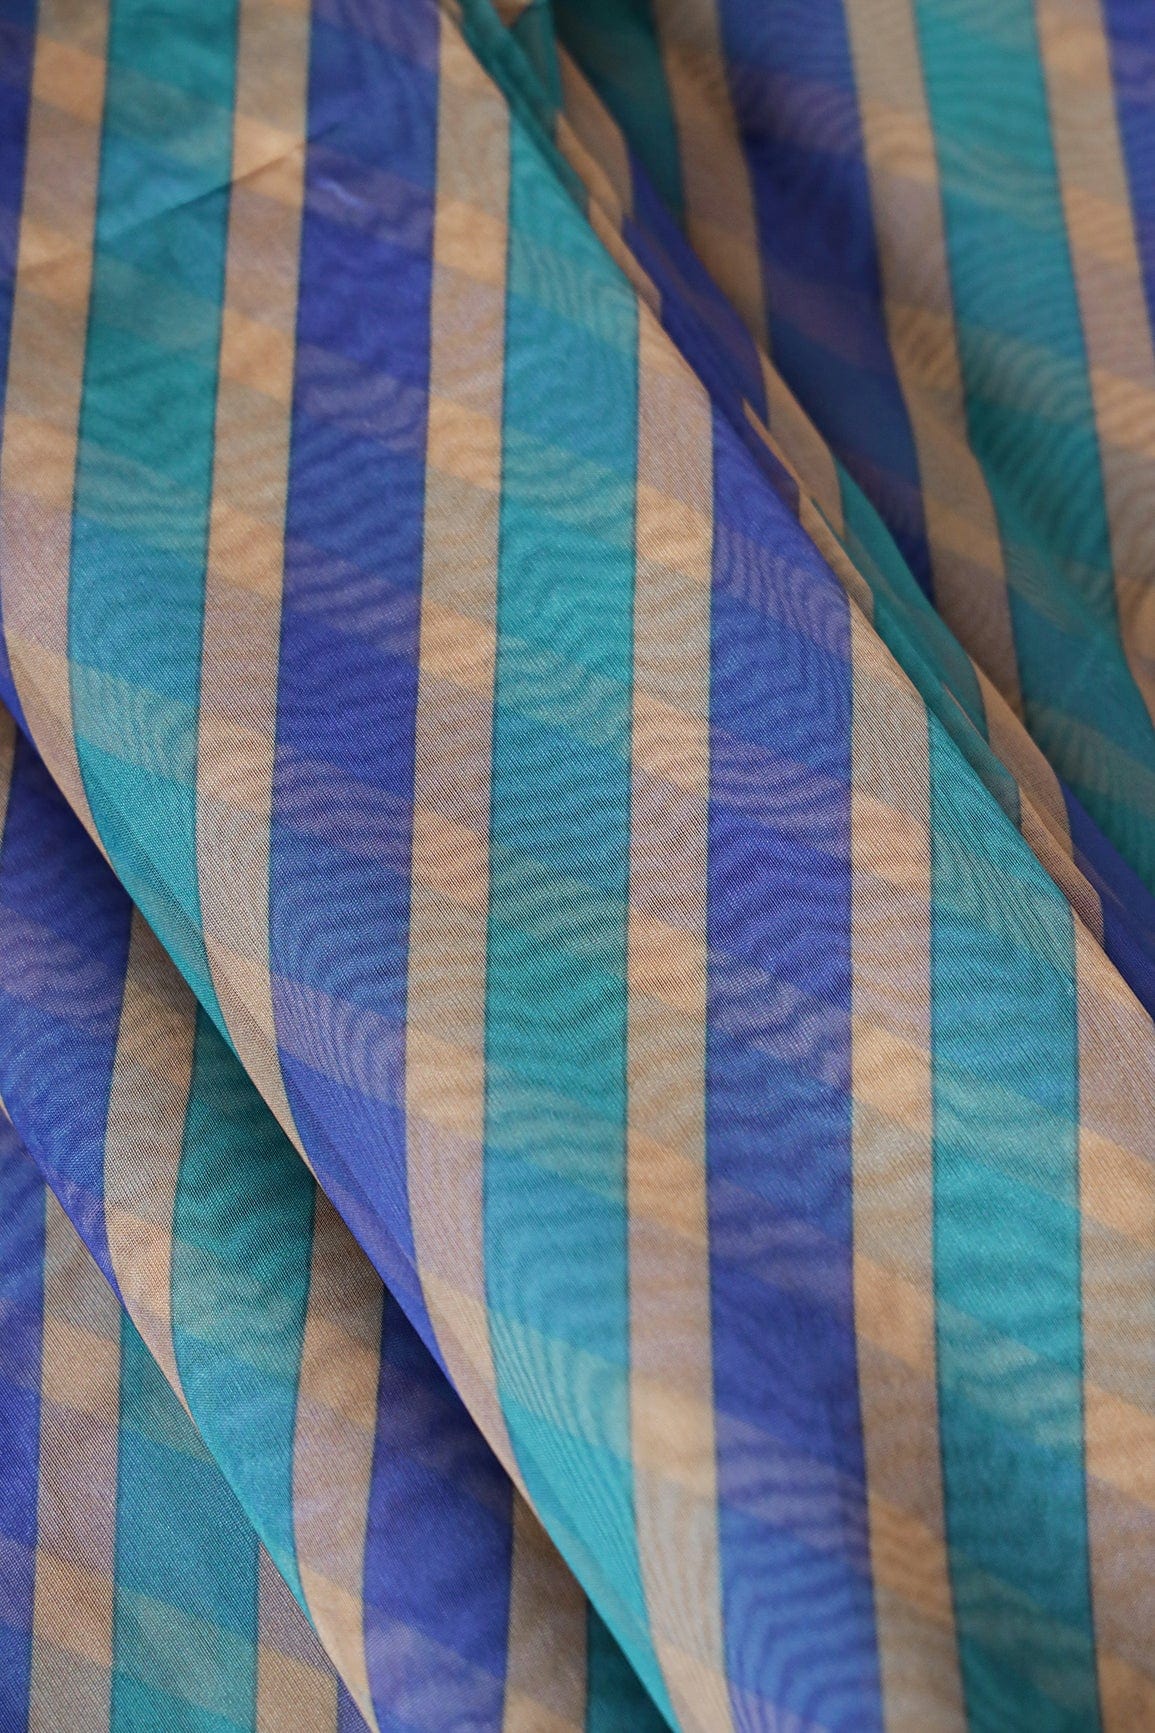 doeraa LEHENGA SET Blue And Beige Unstitched Lehenga Set Fabric (3 Piece)